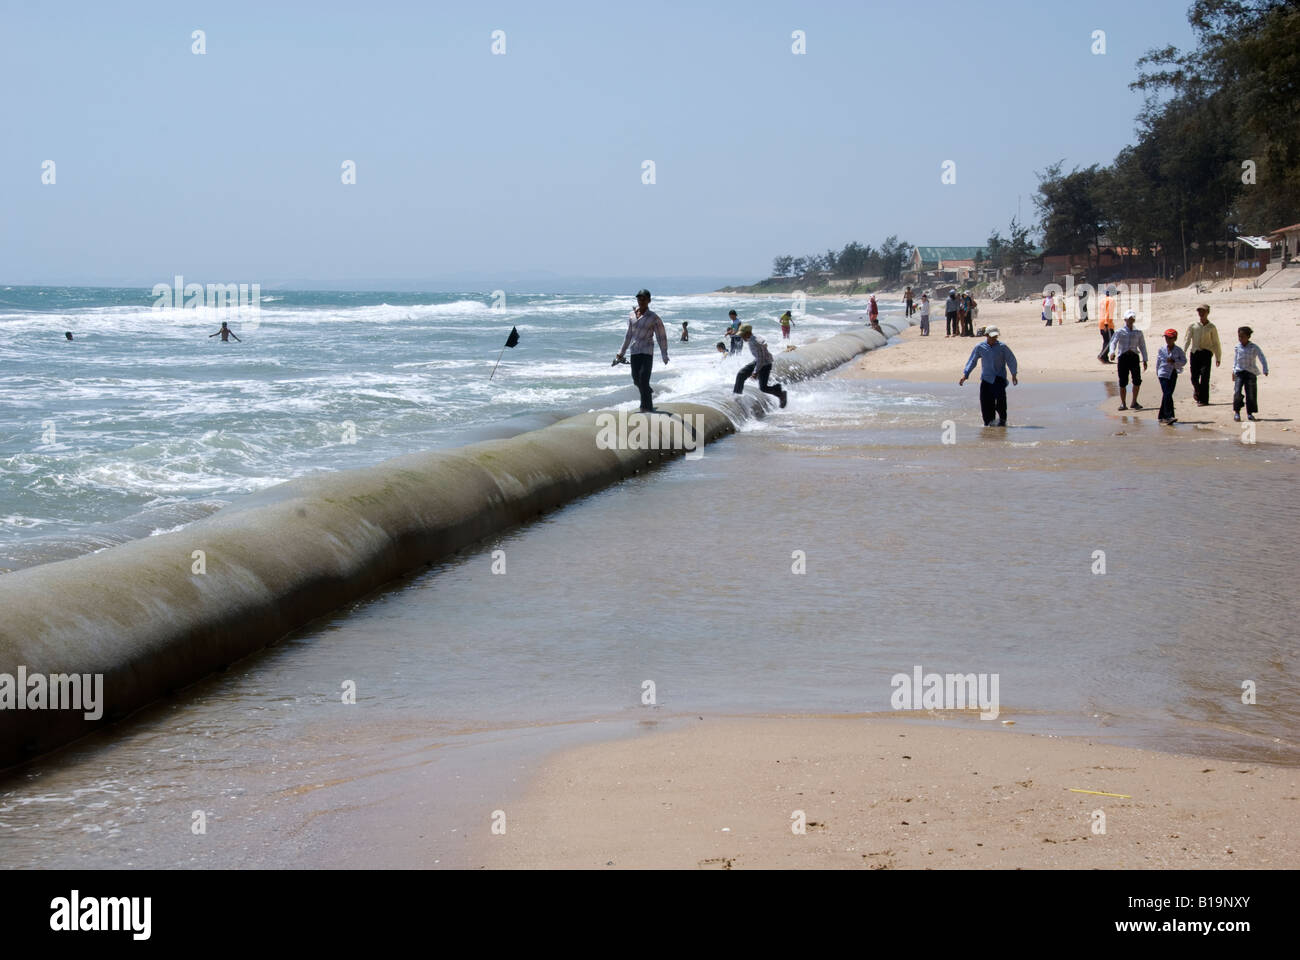 Le persone a rilassarsi passeggiando lungo le enormi sacchi di sabbia messo in atto per proteggere la restante area di spiaggia da ulteriore erosione Foto Stock